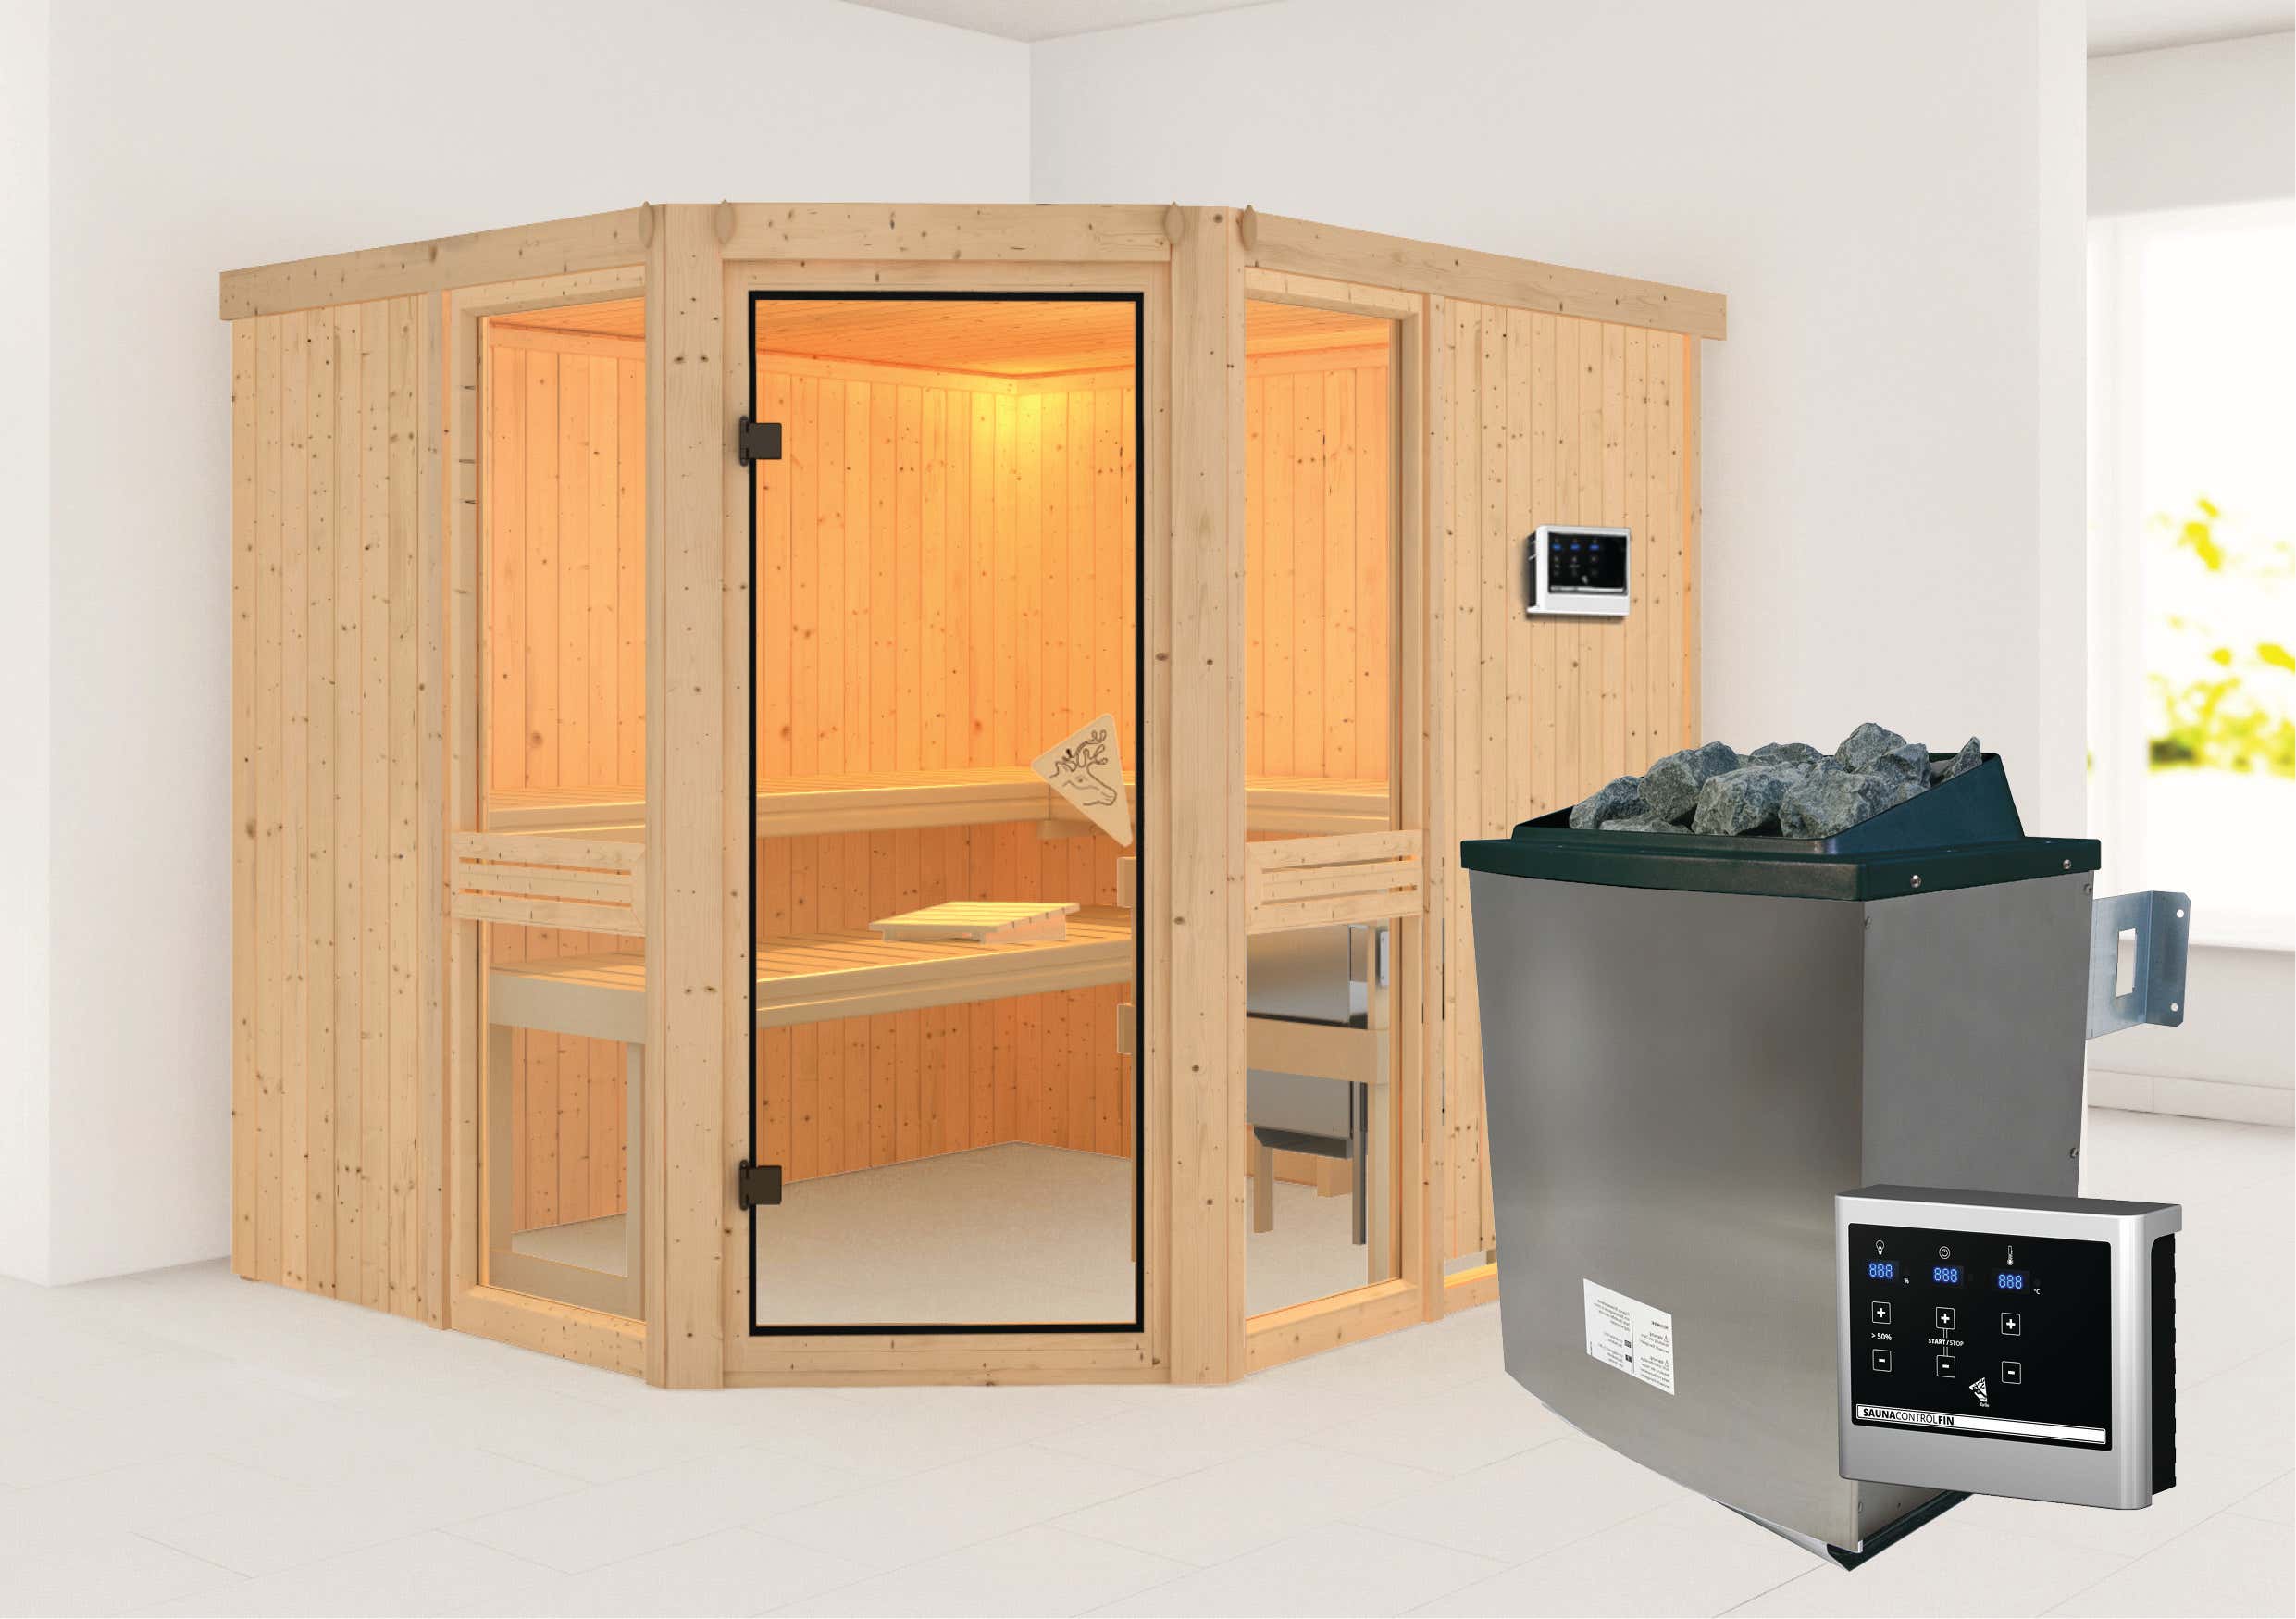 Karibu Sauna Innenkabine Amelia Saunaofen:9 KW integrierte Steuerung|Ausführung:Ohne Dachkranz|Größe:B 196 x T 170 x H 198 cm